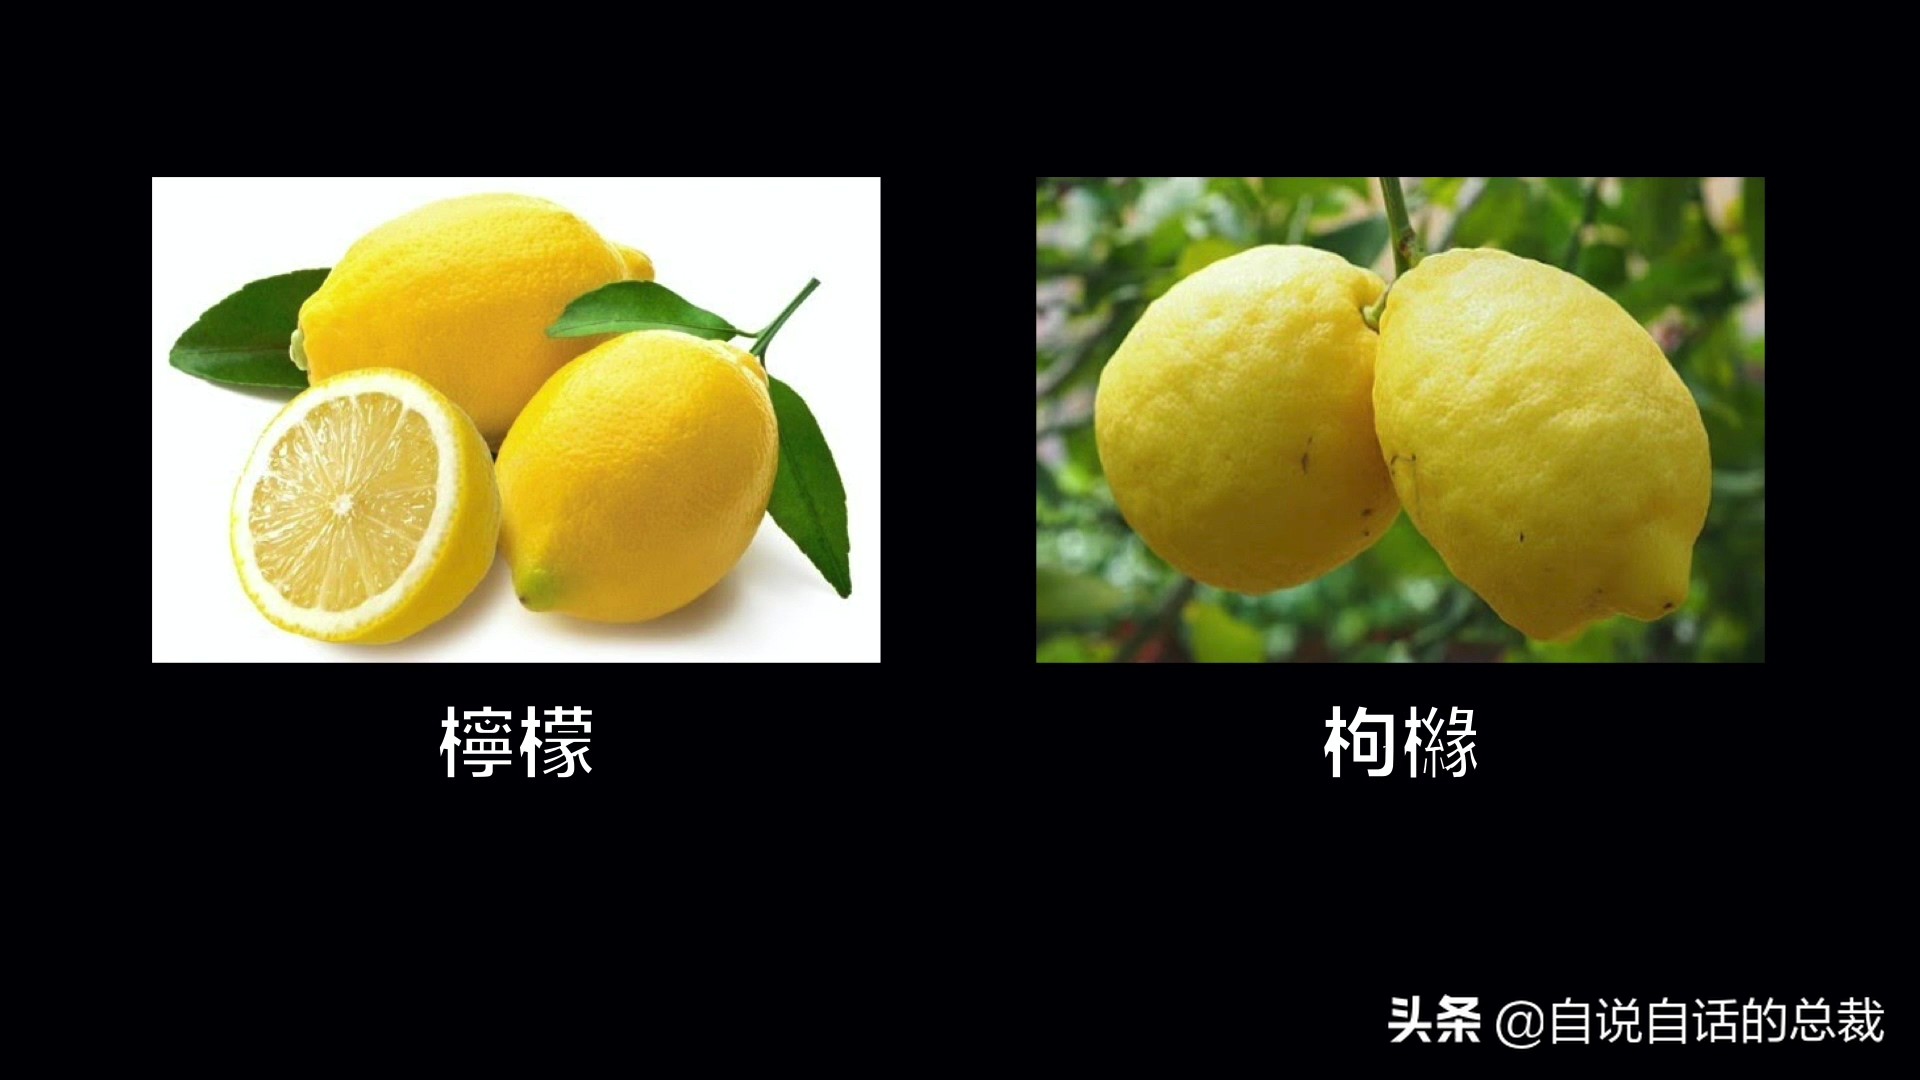 全世界的柠檬都读Lemon？这背后有一个刻在8号染色体上的上古故事